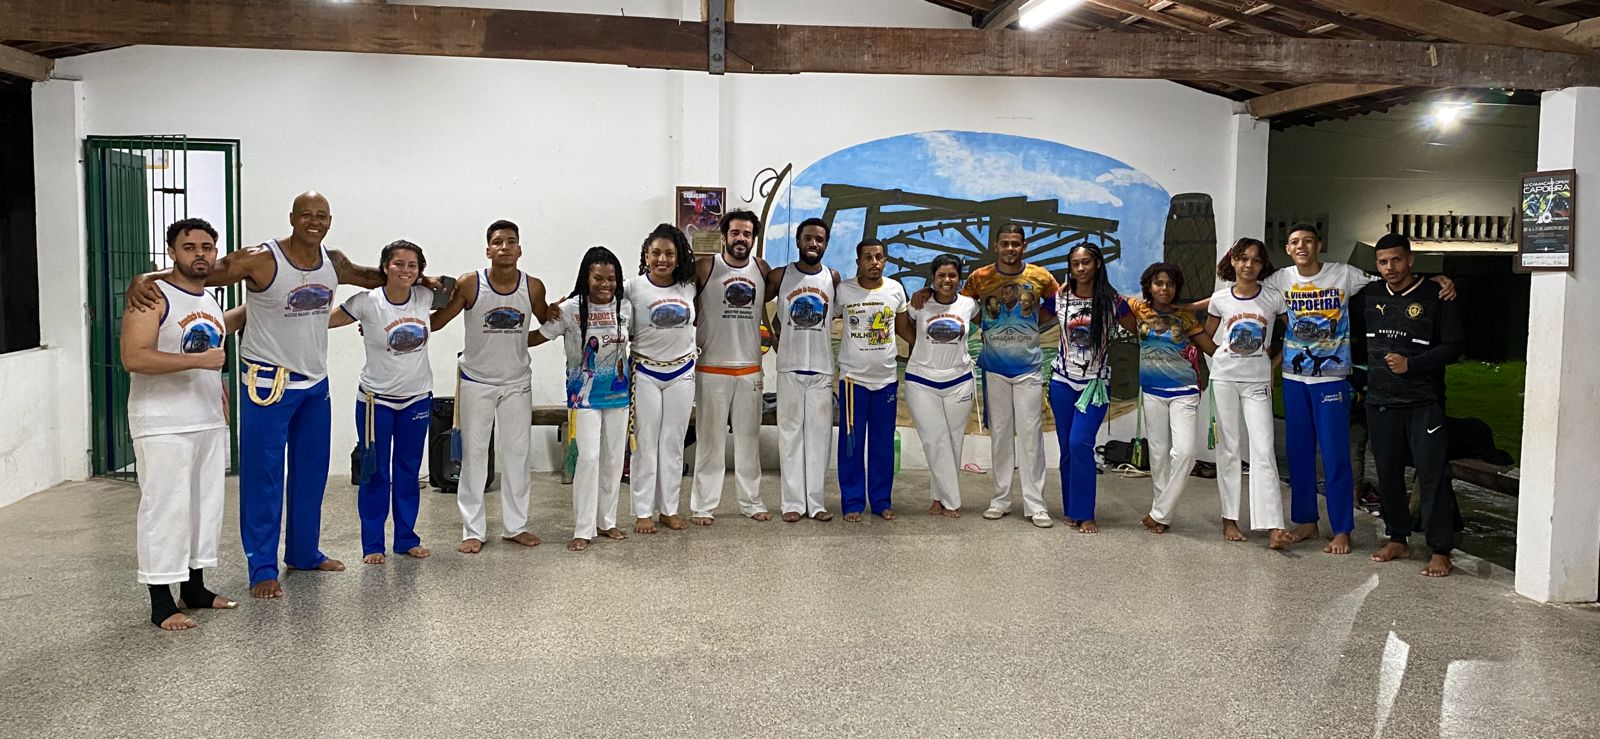 capoeira camp salvador bahia brazil